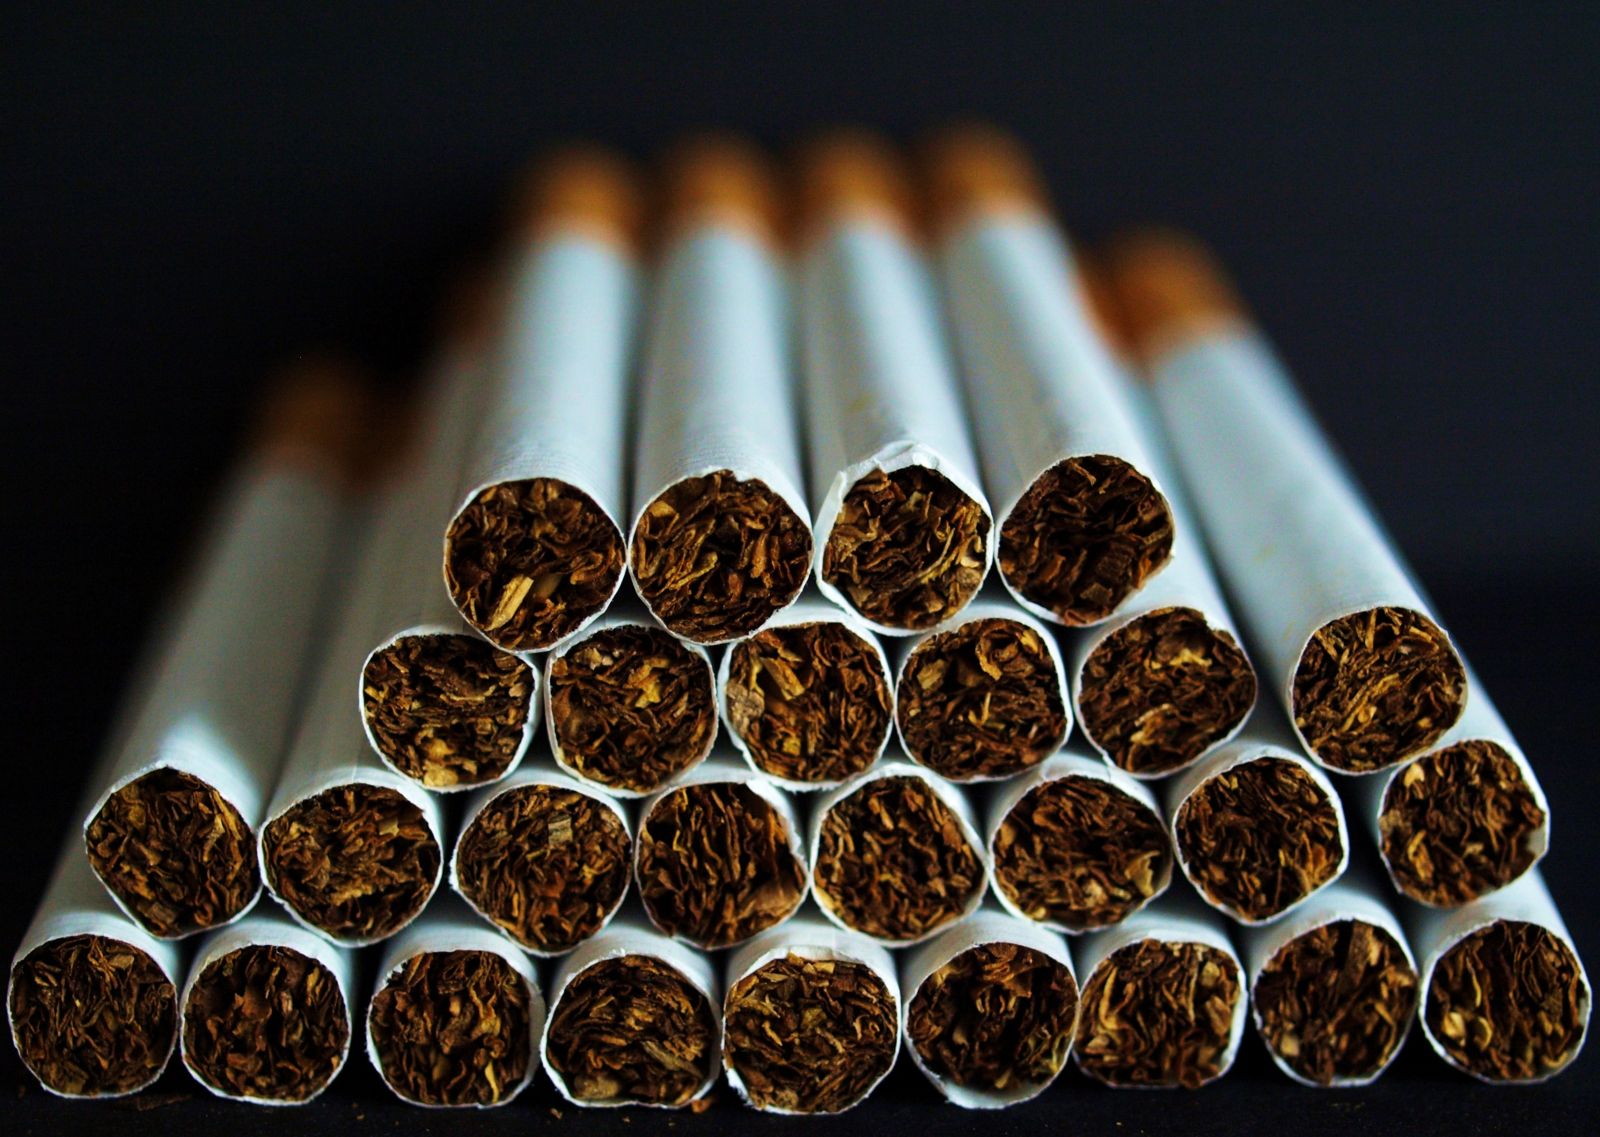 Ölkənin tütün idxalına çəkdiyi xərc 23 milyon dollar artıb